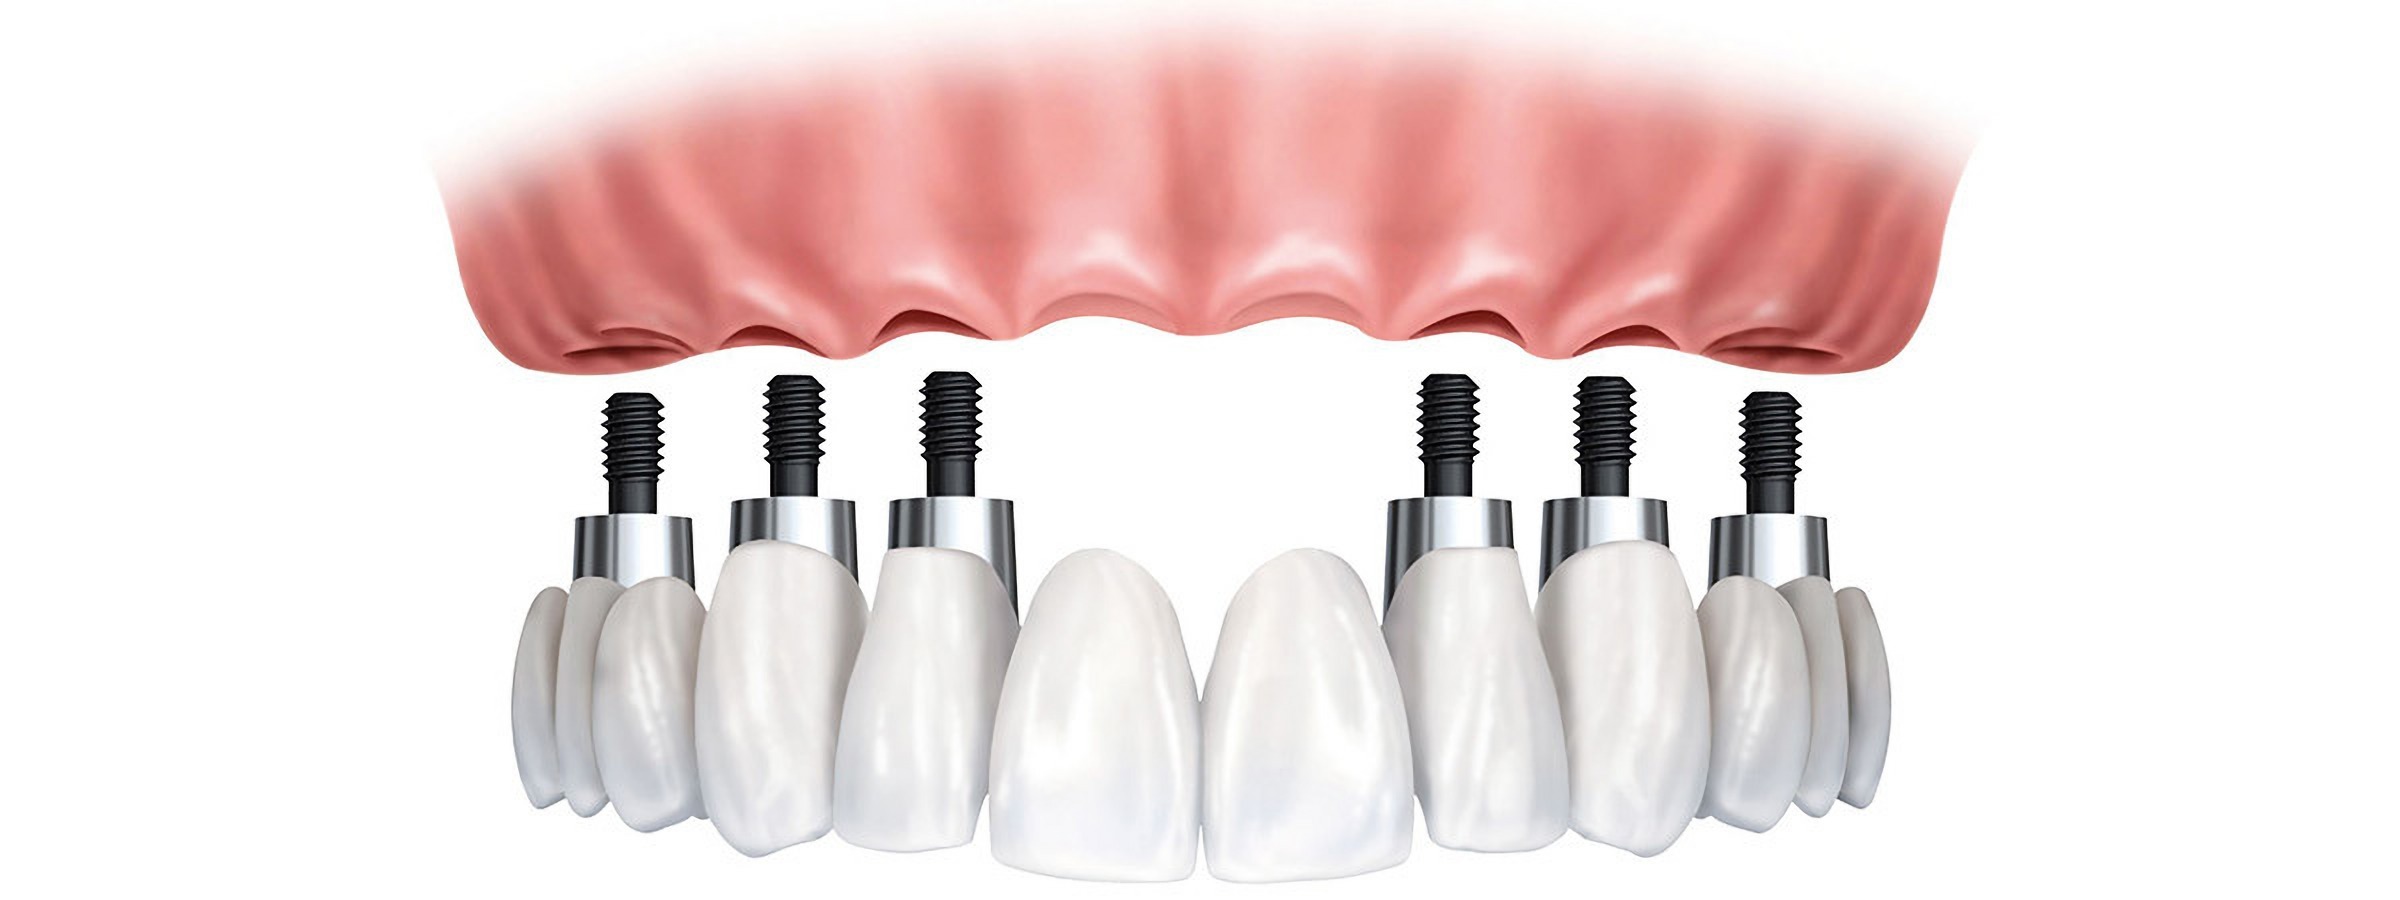 Установка зубных имплантов в Турции